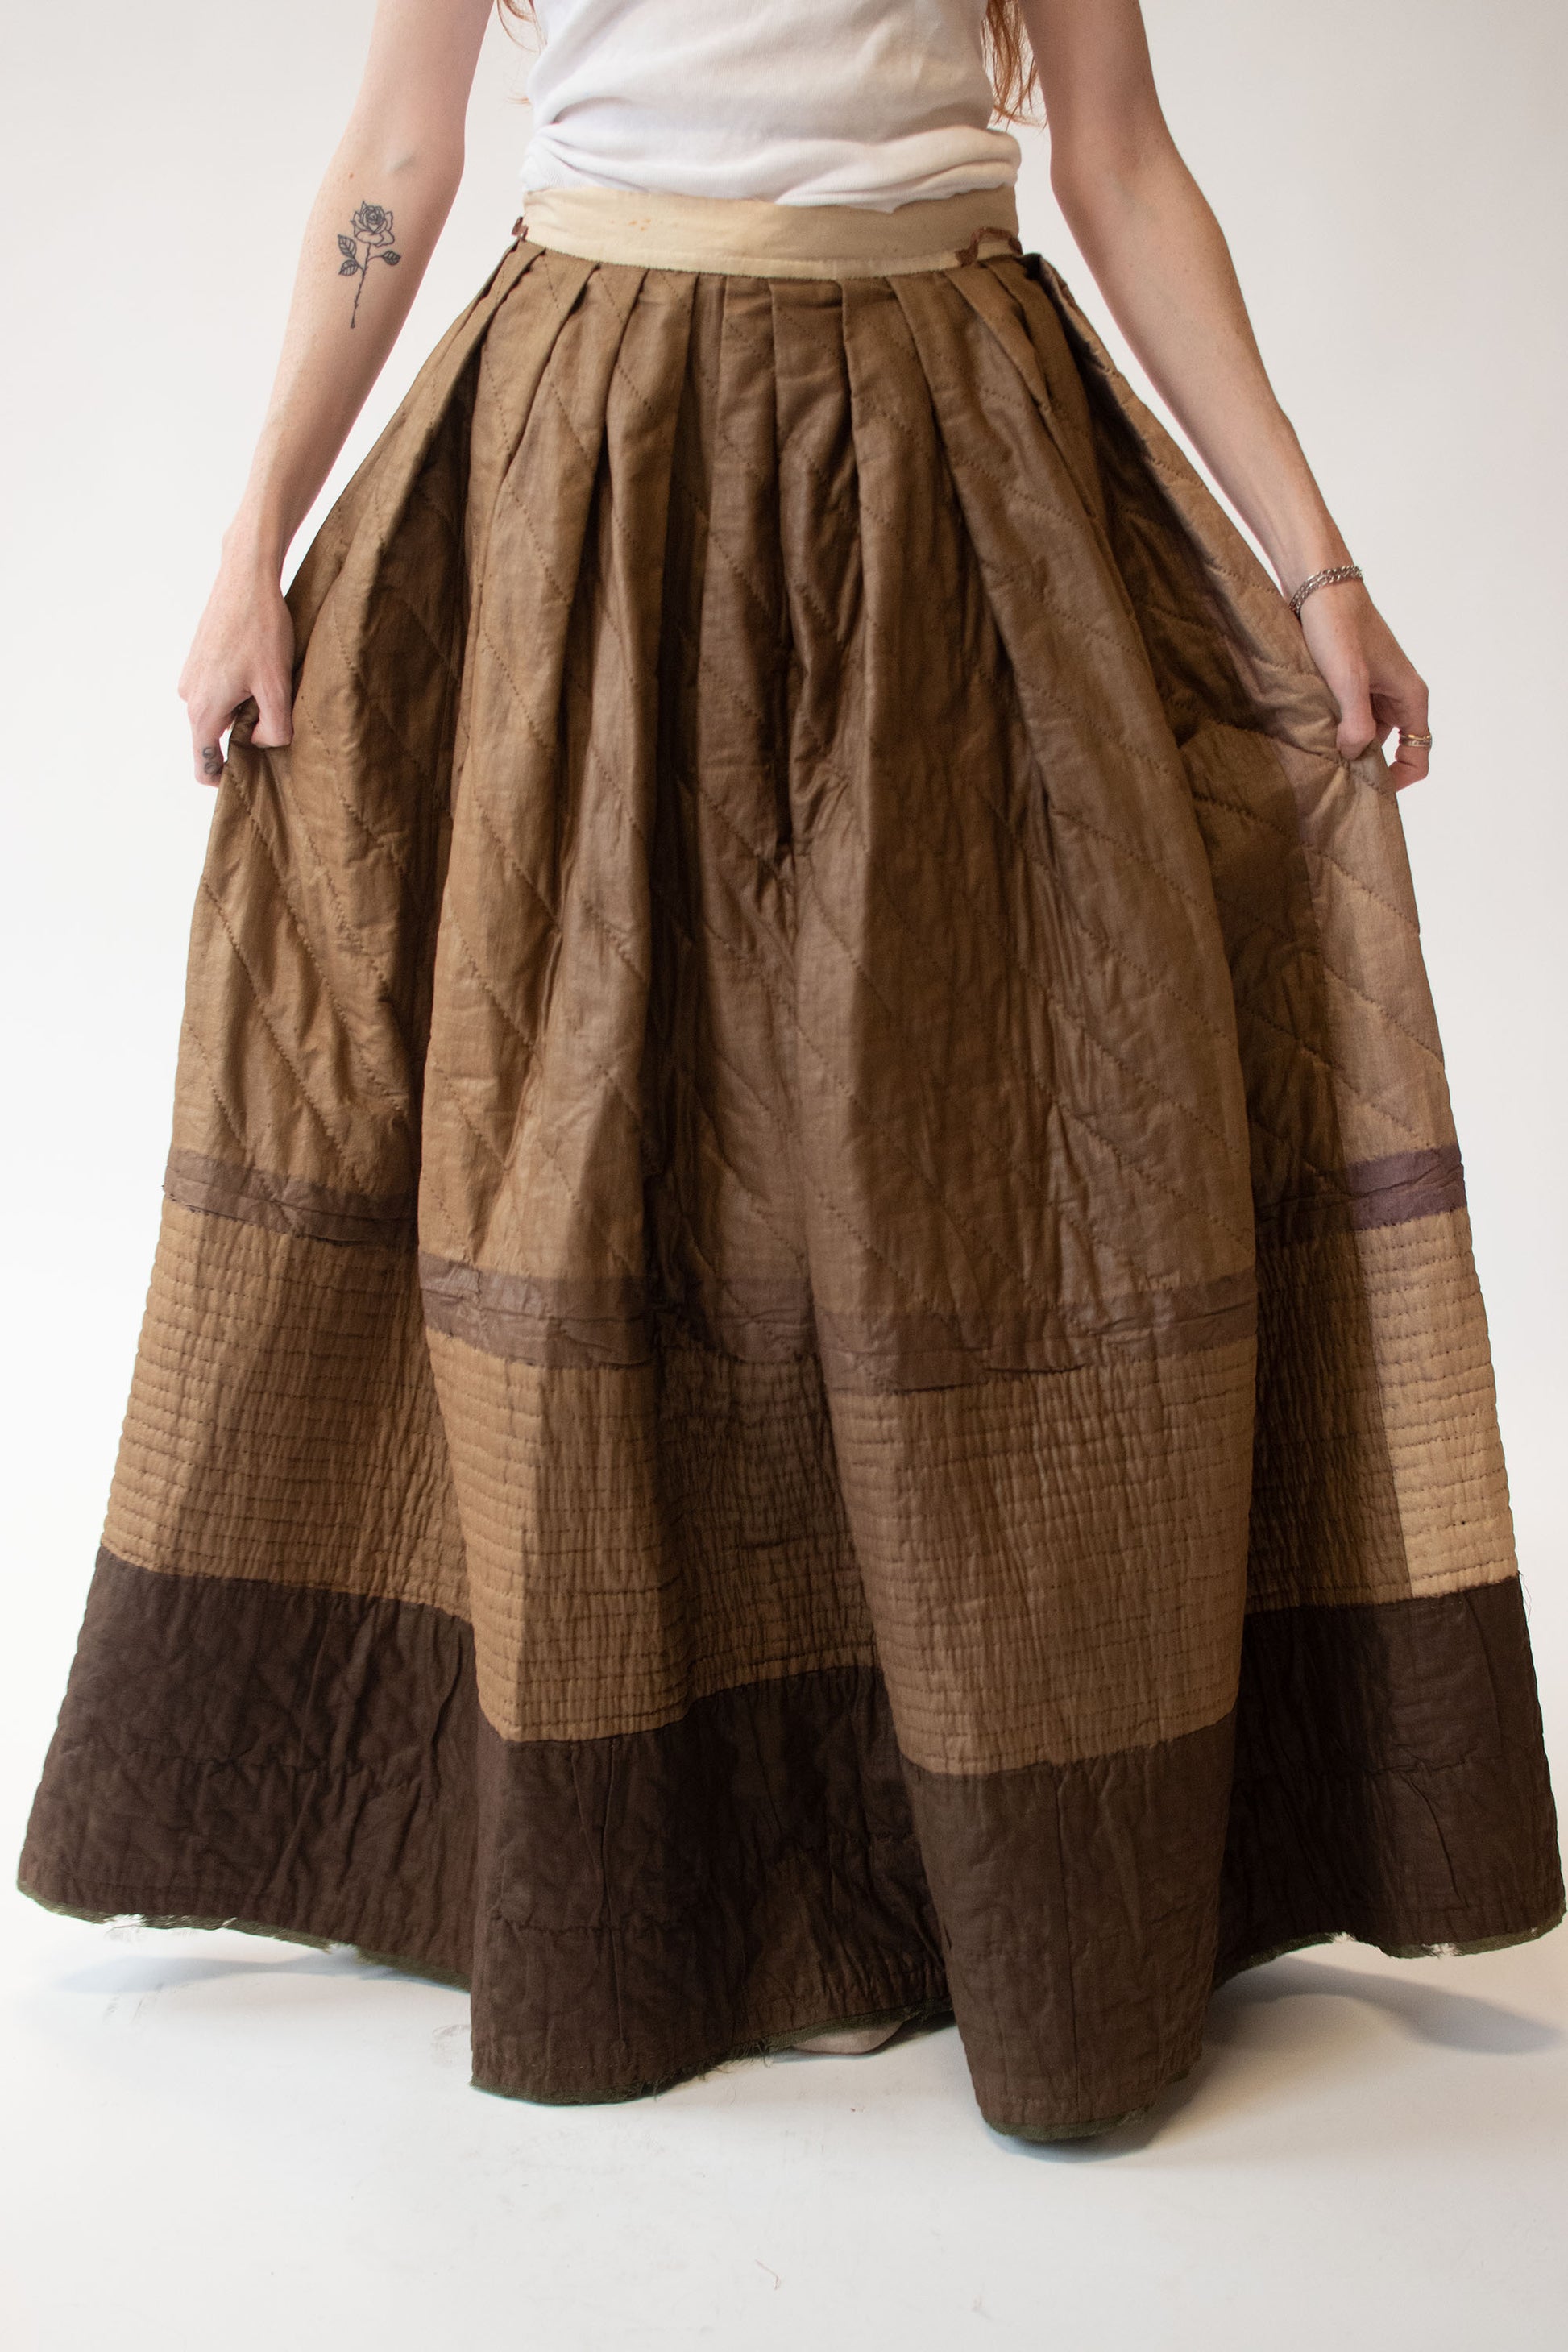 Buy HAUTELOOK Women's Pure Cotton Petticoat with Interlock Sewing